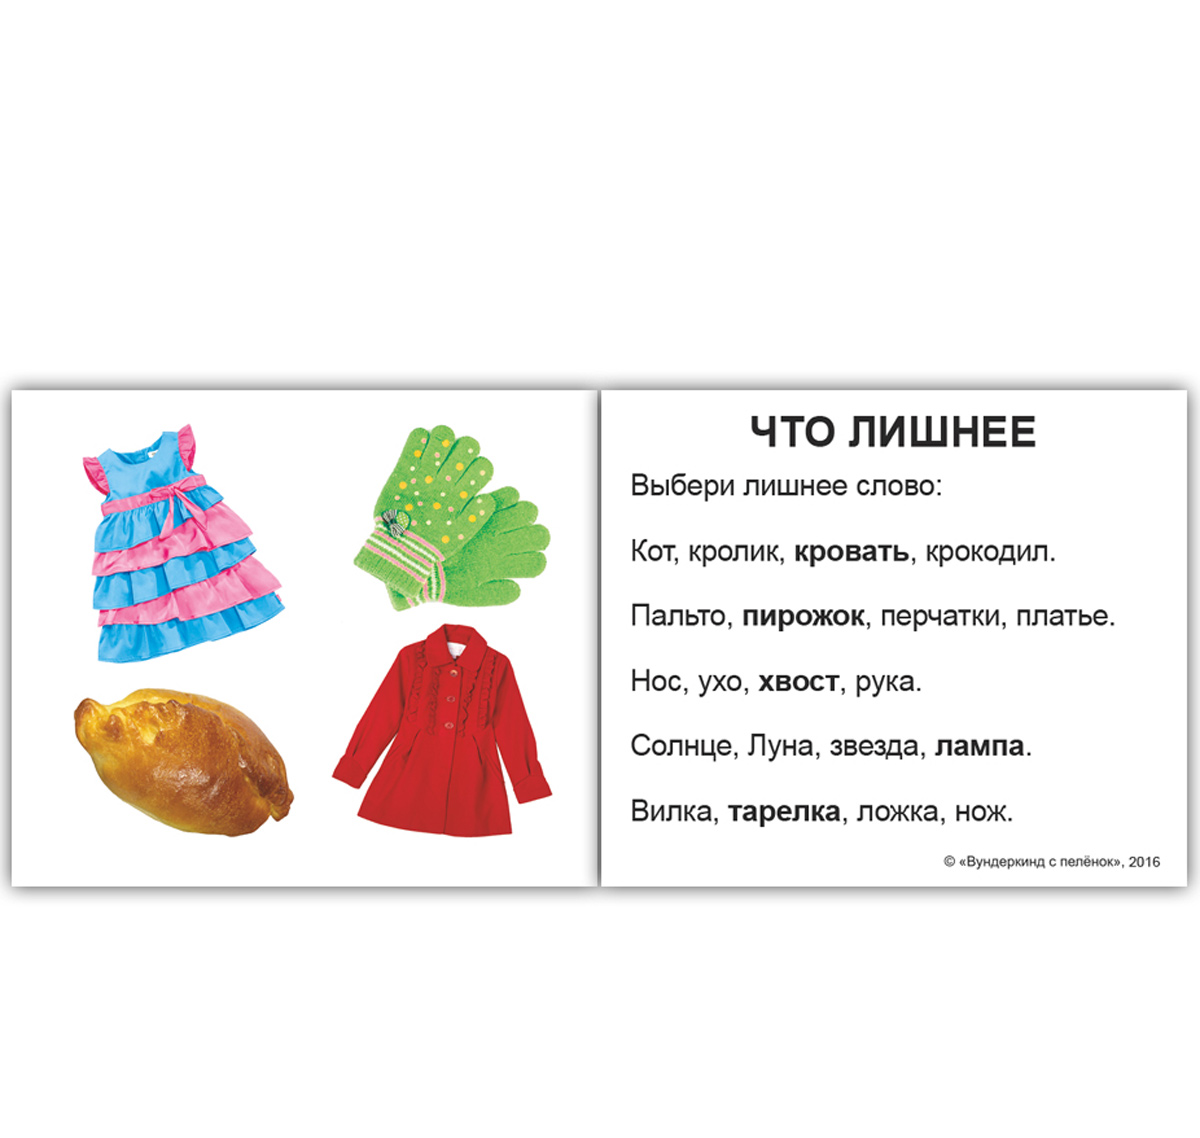 Карточки Домана мини русские с фактами 'Игры с малышами'